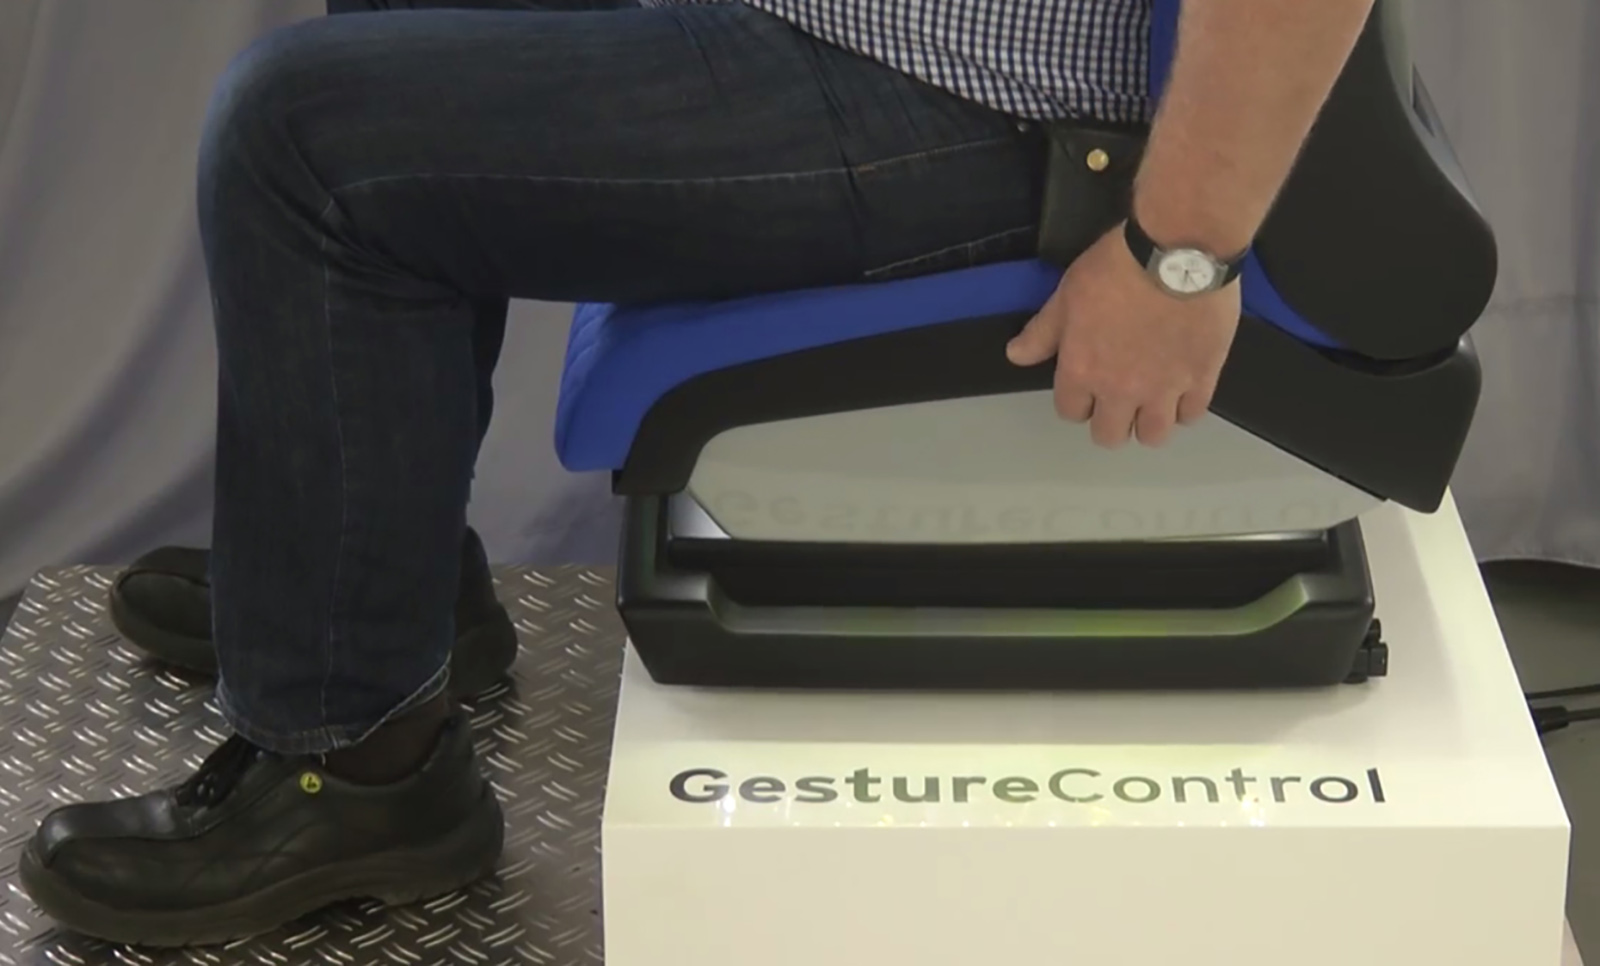 تکنولوژی حرکت (gesture) برای تنظیم صندلی ماشین